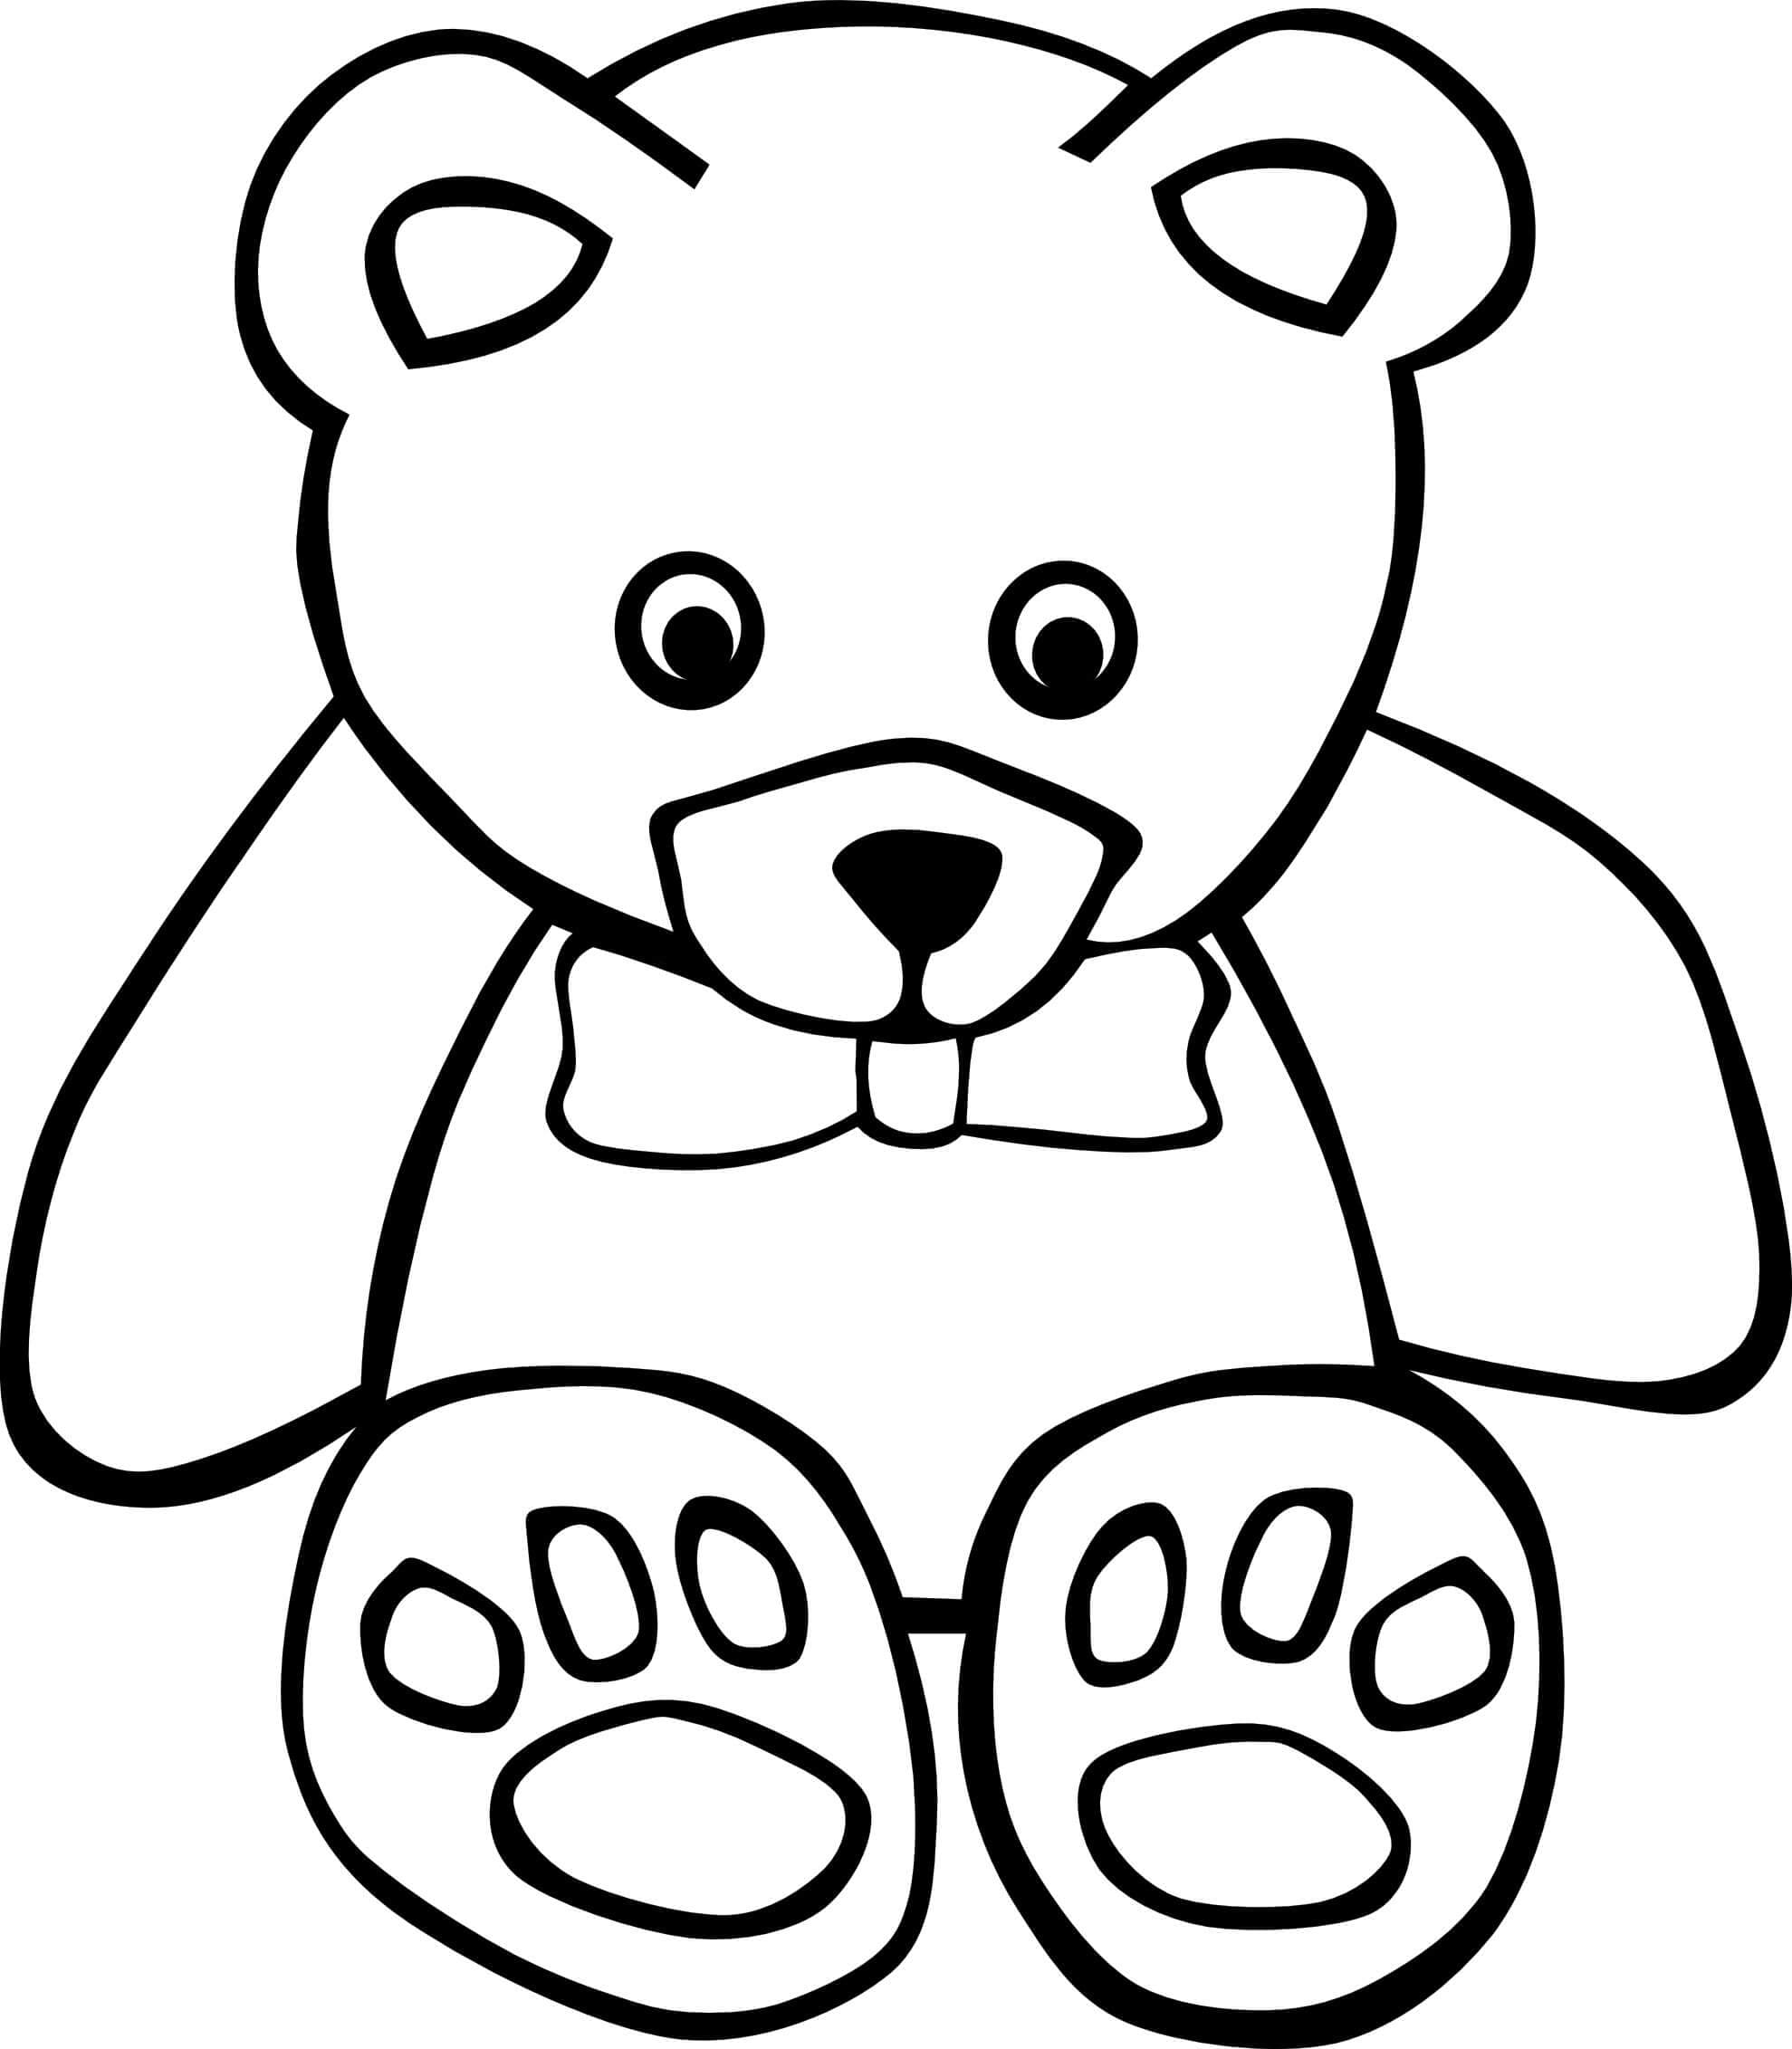 Jednoduchá kresba medvídka omalovánka